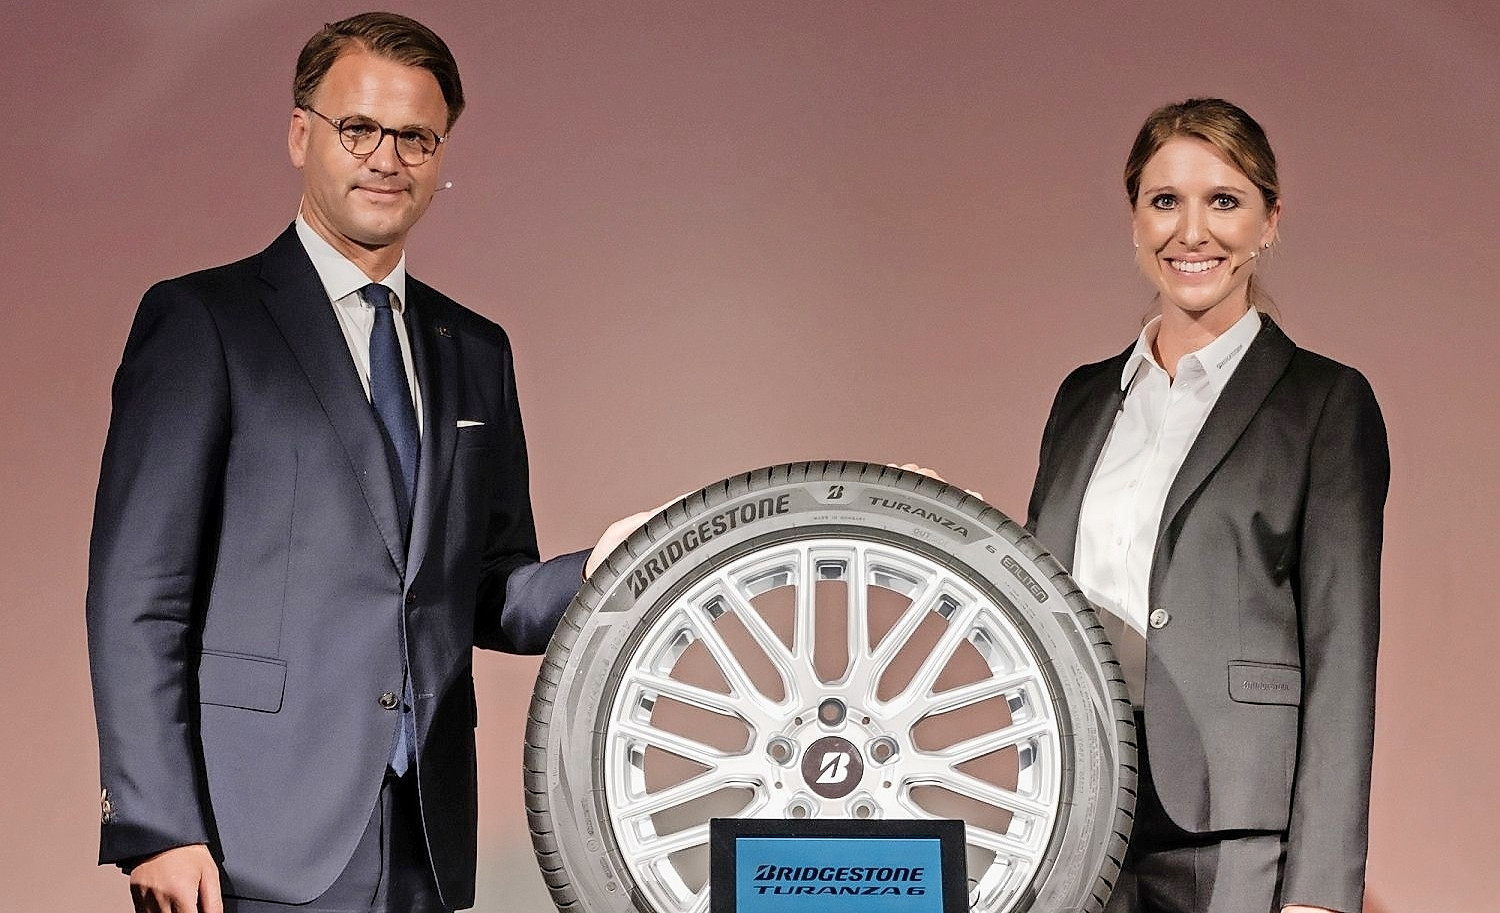 Christian Mühlhäuser, Managing Director, and Julia Krönlein, Head of Marketing at Bridgestone Central Region.